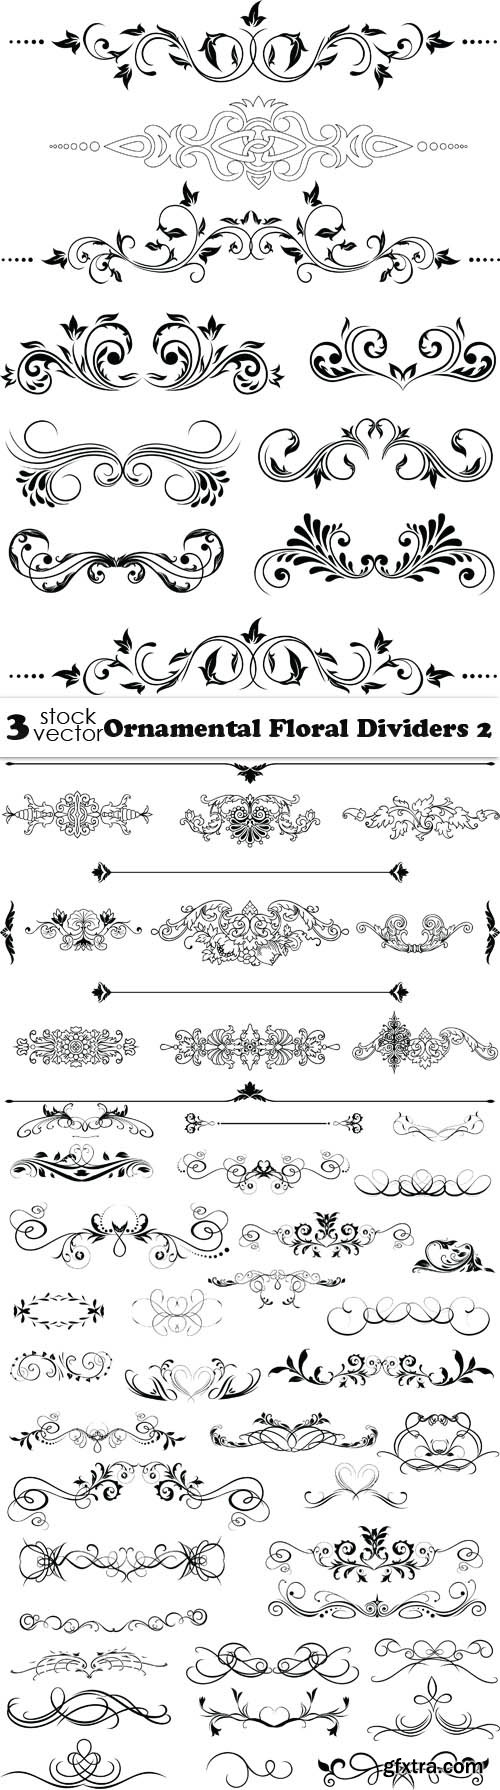 Vectors - Ornamental Floral Dividers 2